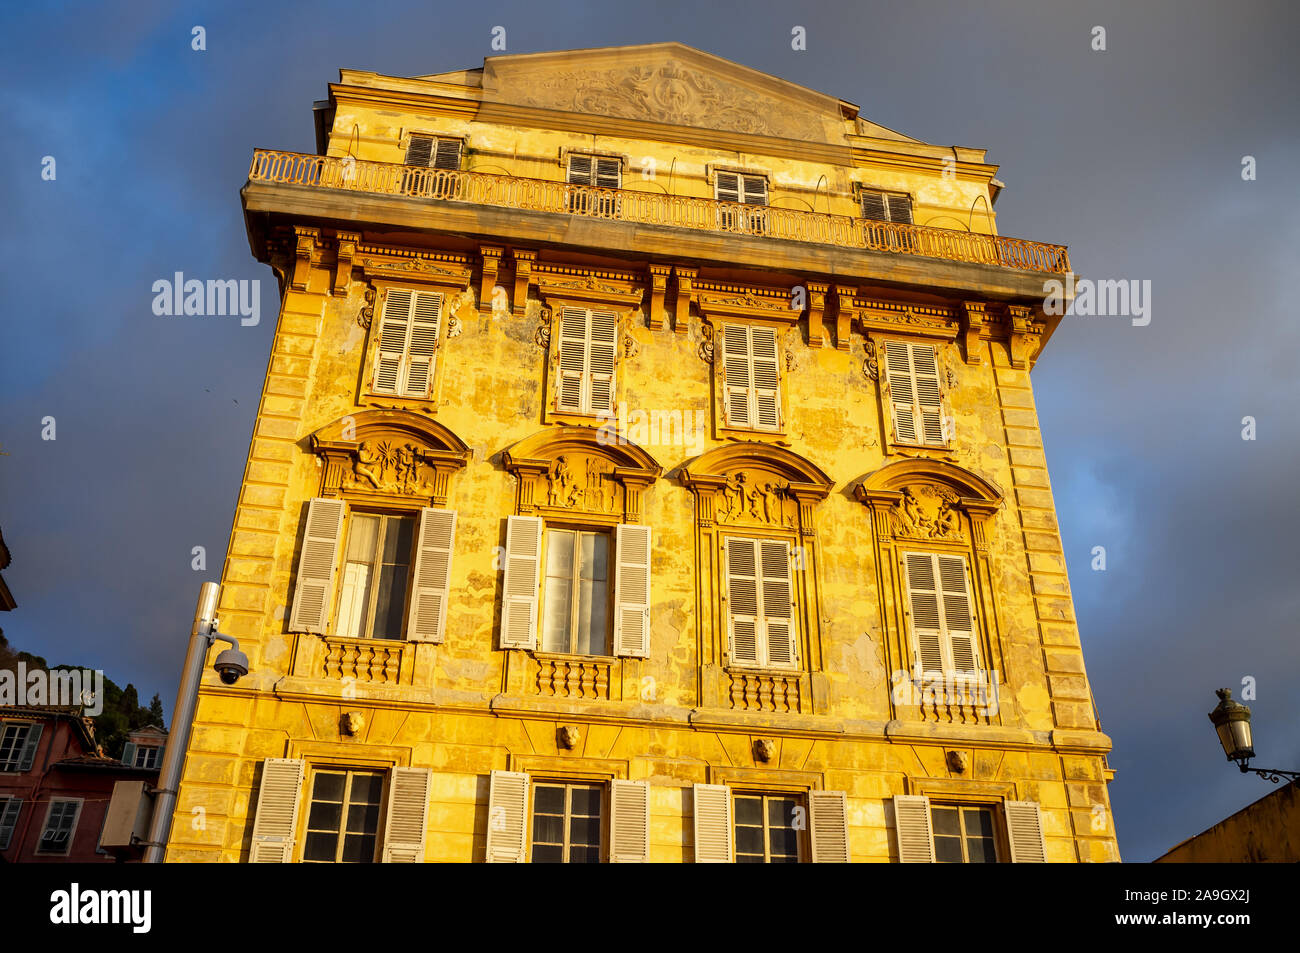 La façade jaune classique s'appuyant sur le Cours Saleya marché dans la vieille ville de Nice, Côte d'Azur Banque D'Images